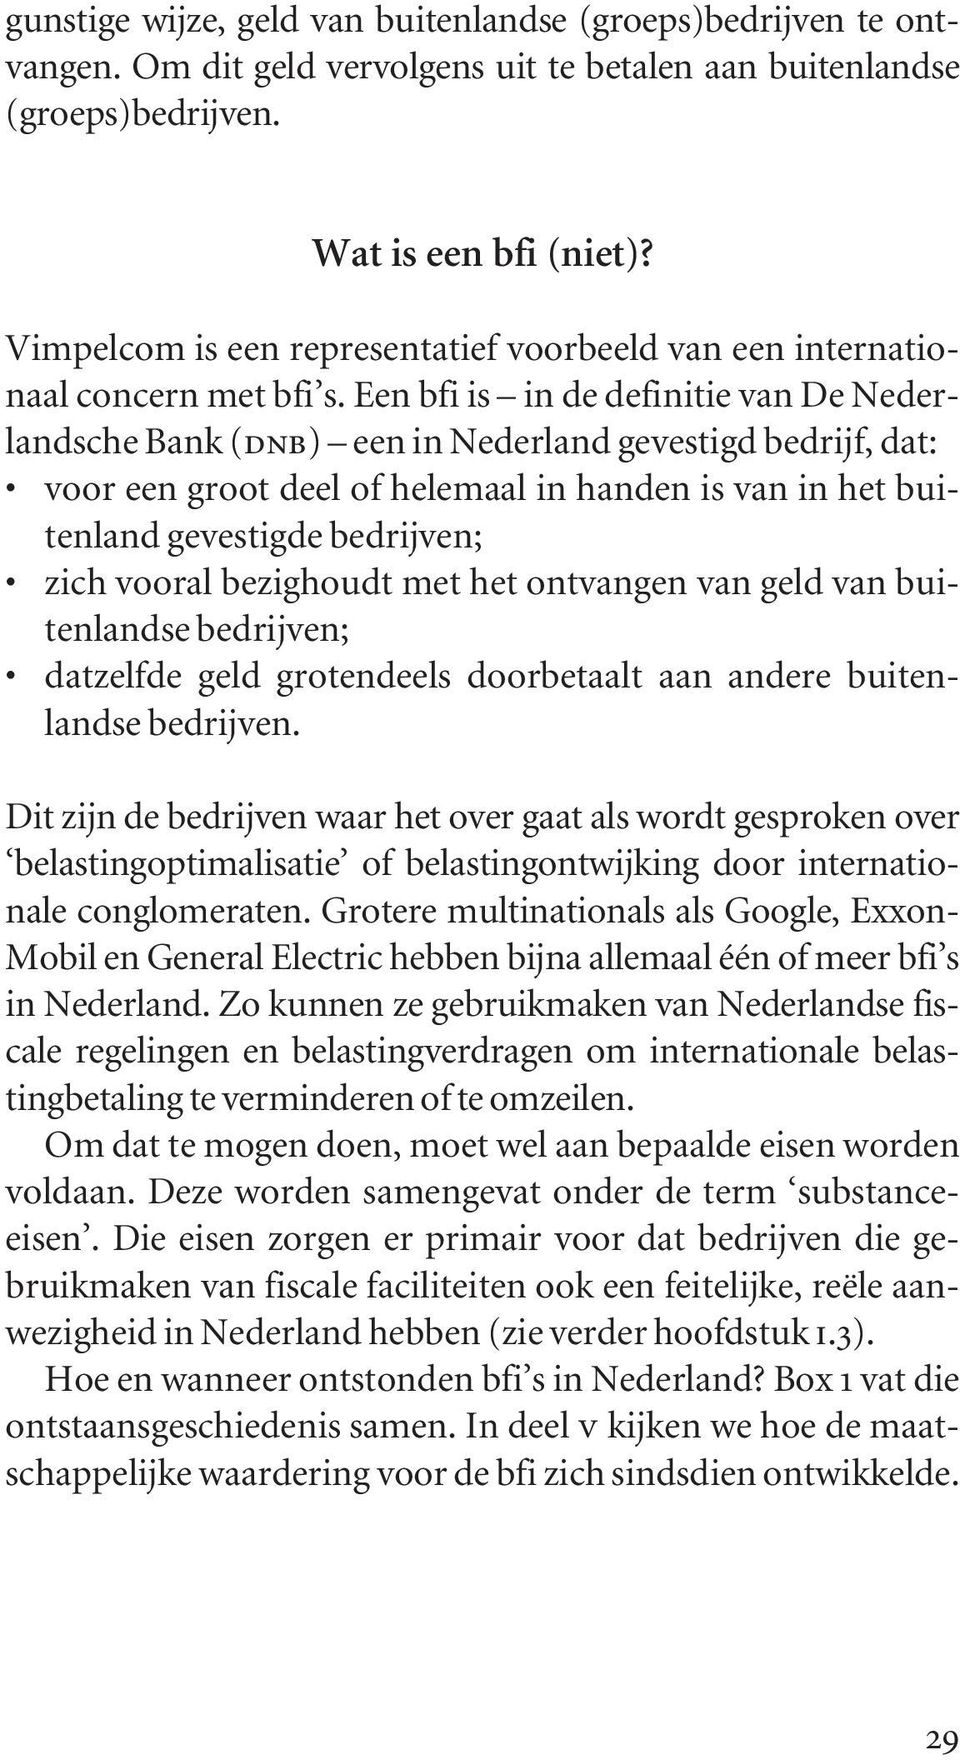 Een bfi is in de definitie van De Nederlandsche Bank (dnb) een in Nederland gevestigd bedrijf, dat: voor een groot deel of helemaal in handen is van in het buitenland gevestigde bedrijven; zich